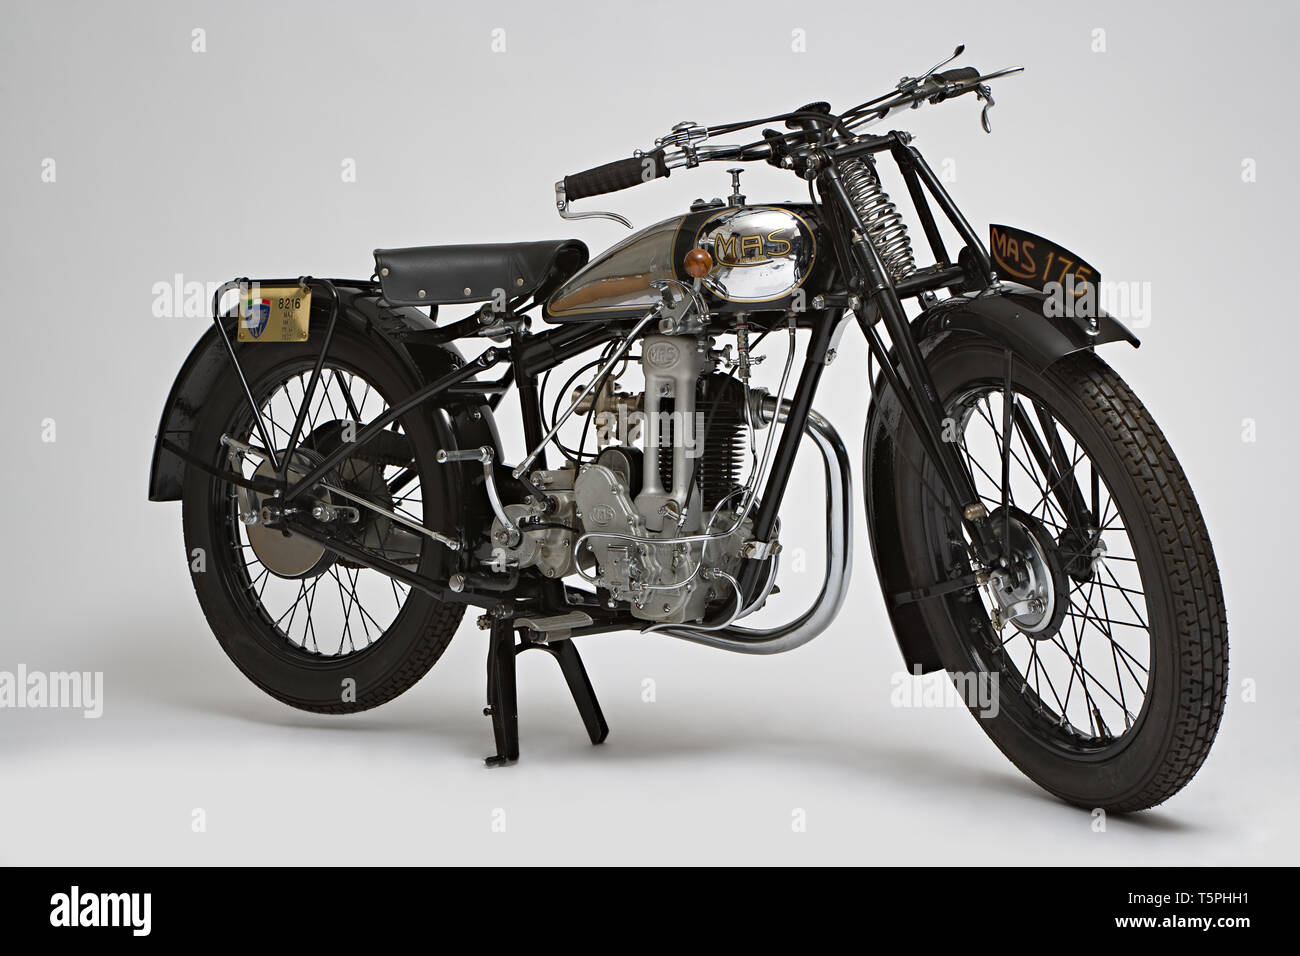 Moto d'epoca Mas 109 L - 175 cc  Marca: Mas modello: 109 L nazione: Italia - Milano anno: 1932 condizioni: restaurata cilindrata: 174 (al Stock Photo